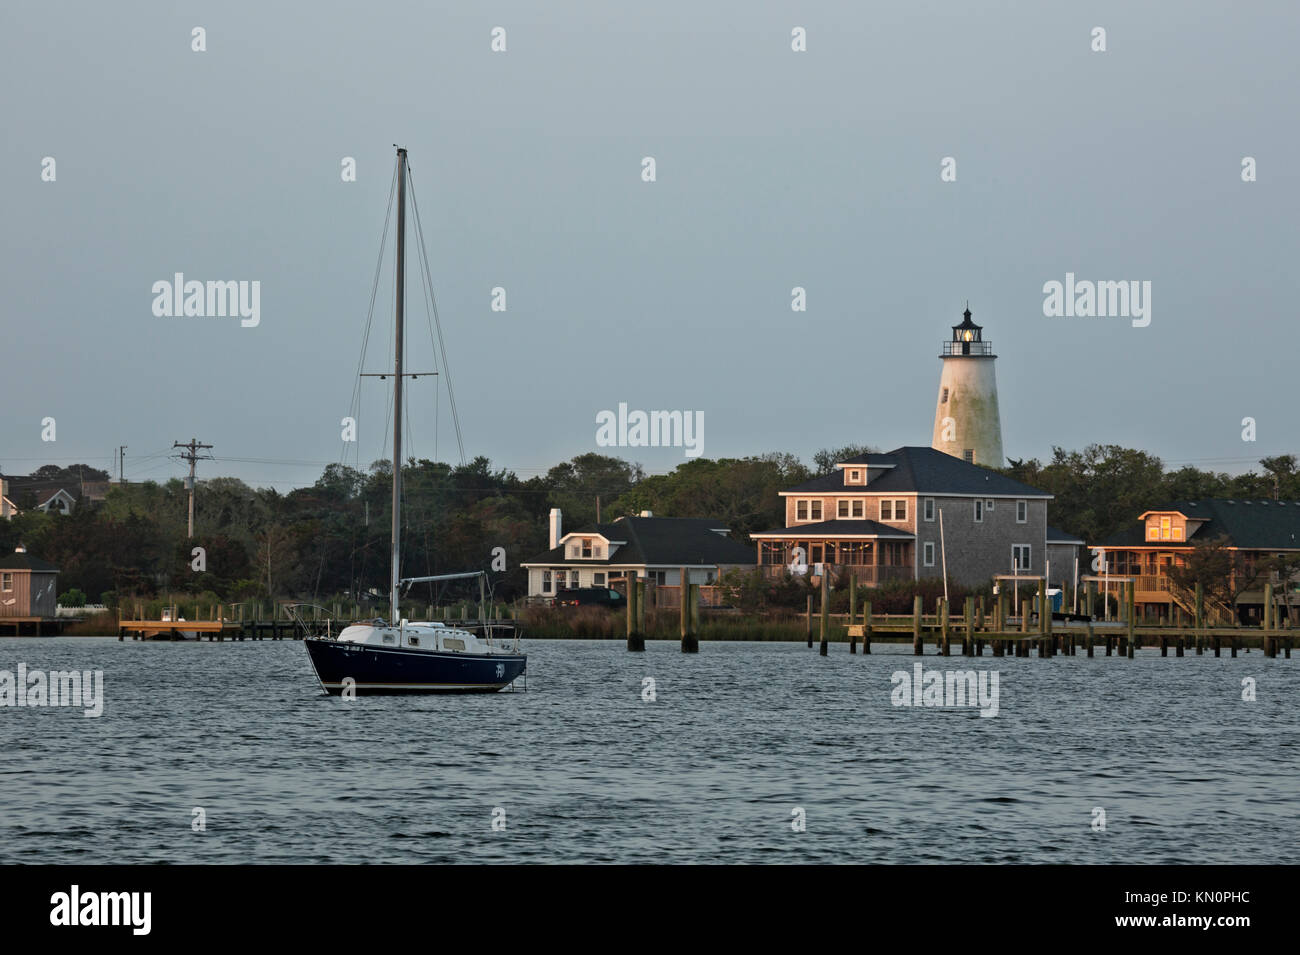 NC01037-00...North Carolina - Amanecer sobre Silver Lake Harbour y el faro de la Isla Ocracoke Outer Banks. Foto de stock